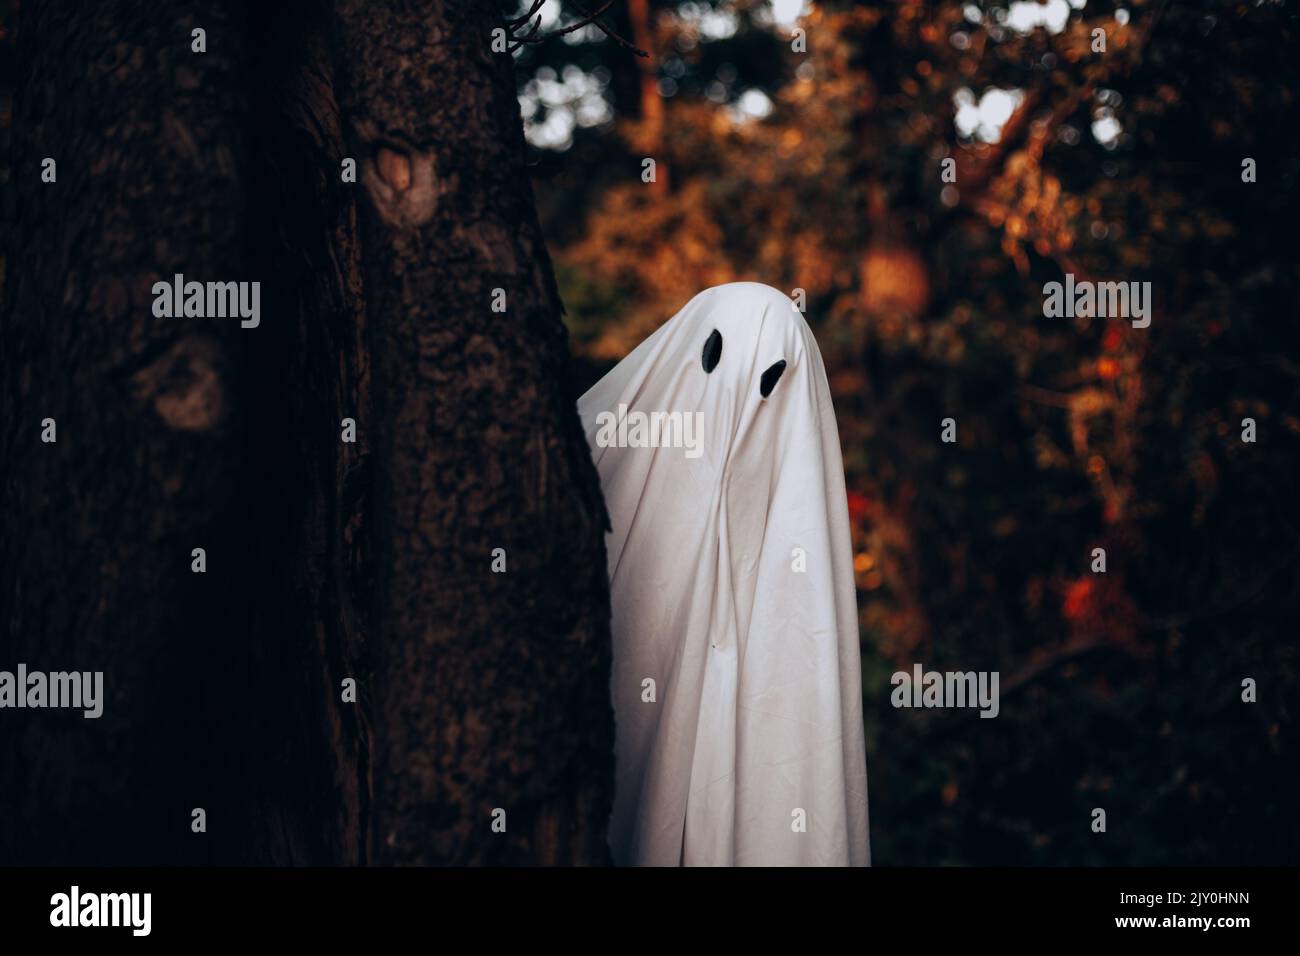 Fantôme debout derrière l'arbre en forêt pendant Halloween Banque D'Images